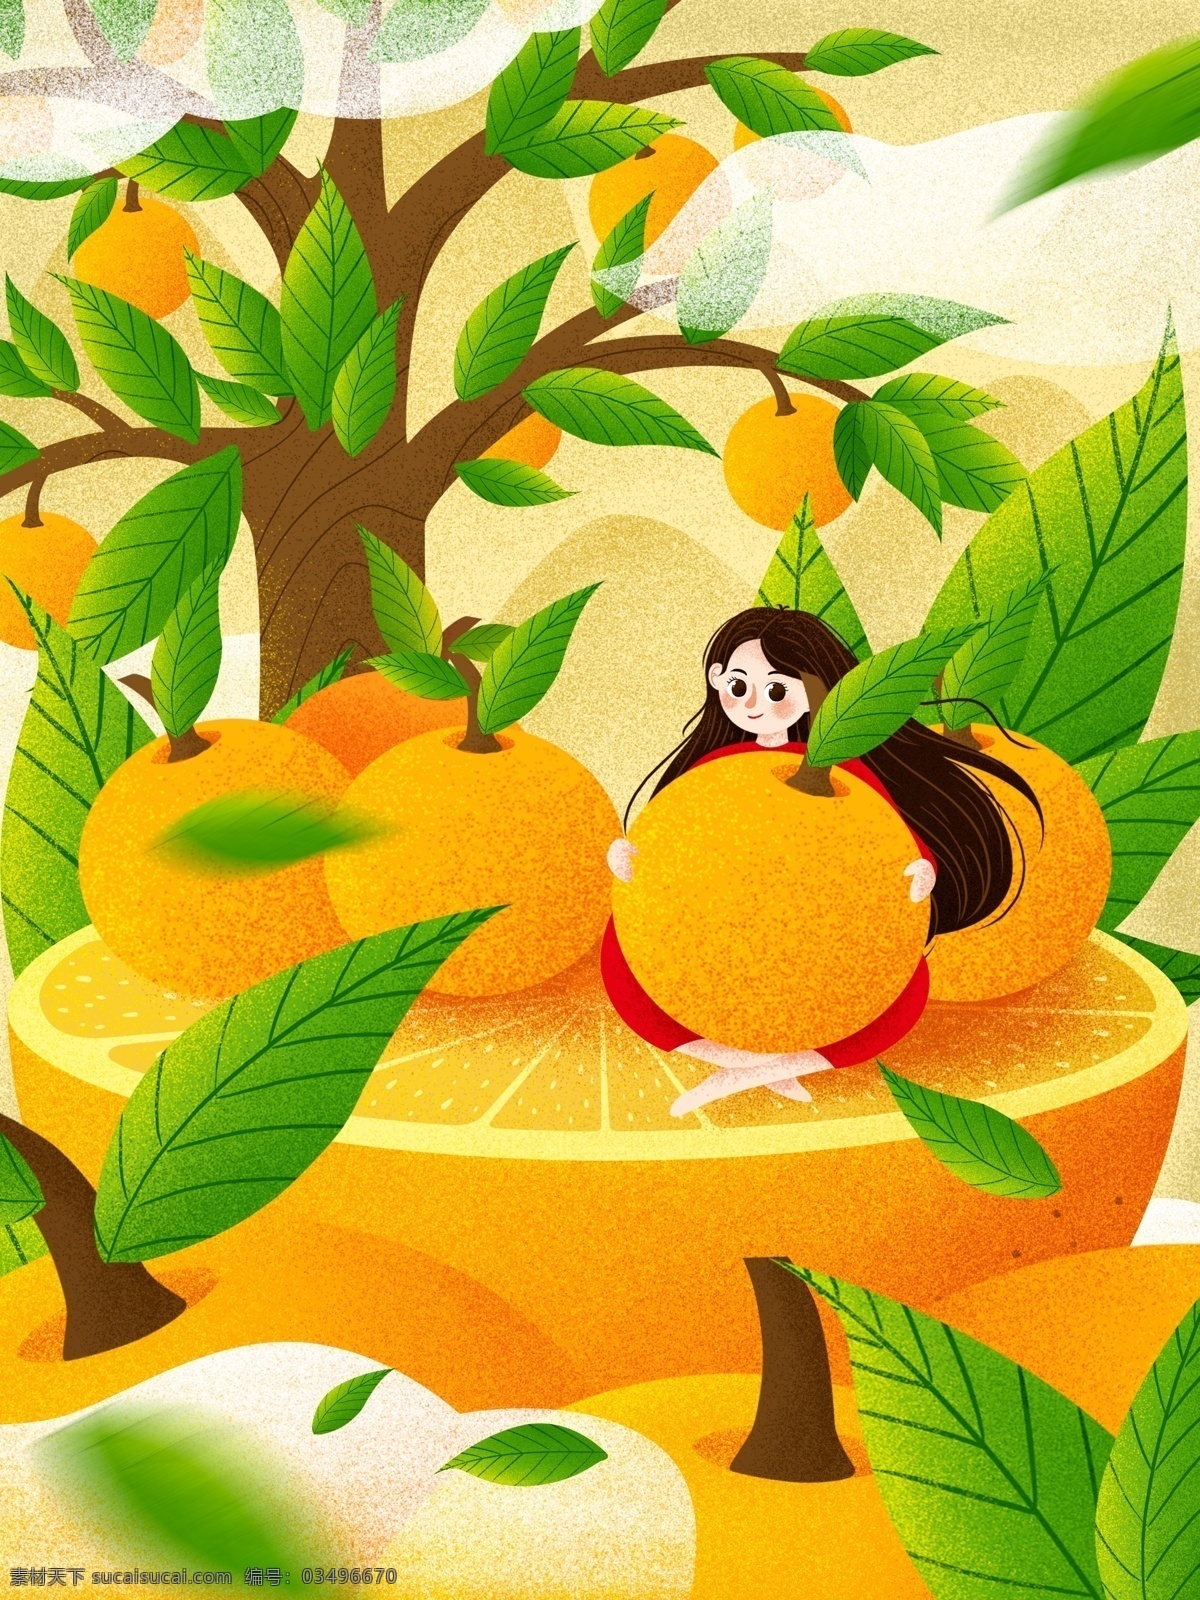 创意 水果 橘子 插画 黄色 女孩 人物 叶子 树叶 橙子 橘色 橘子树